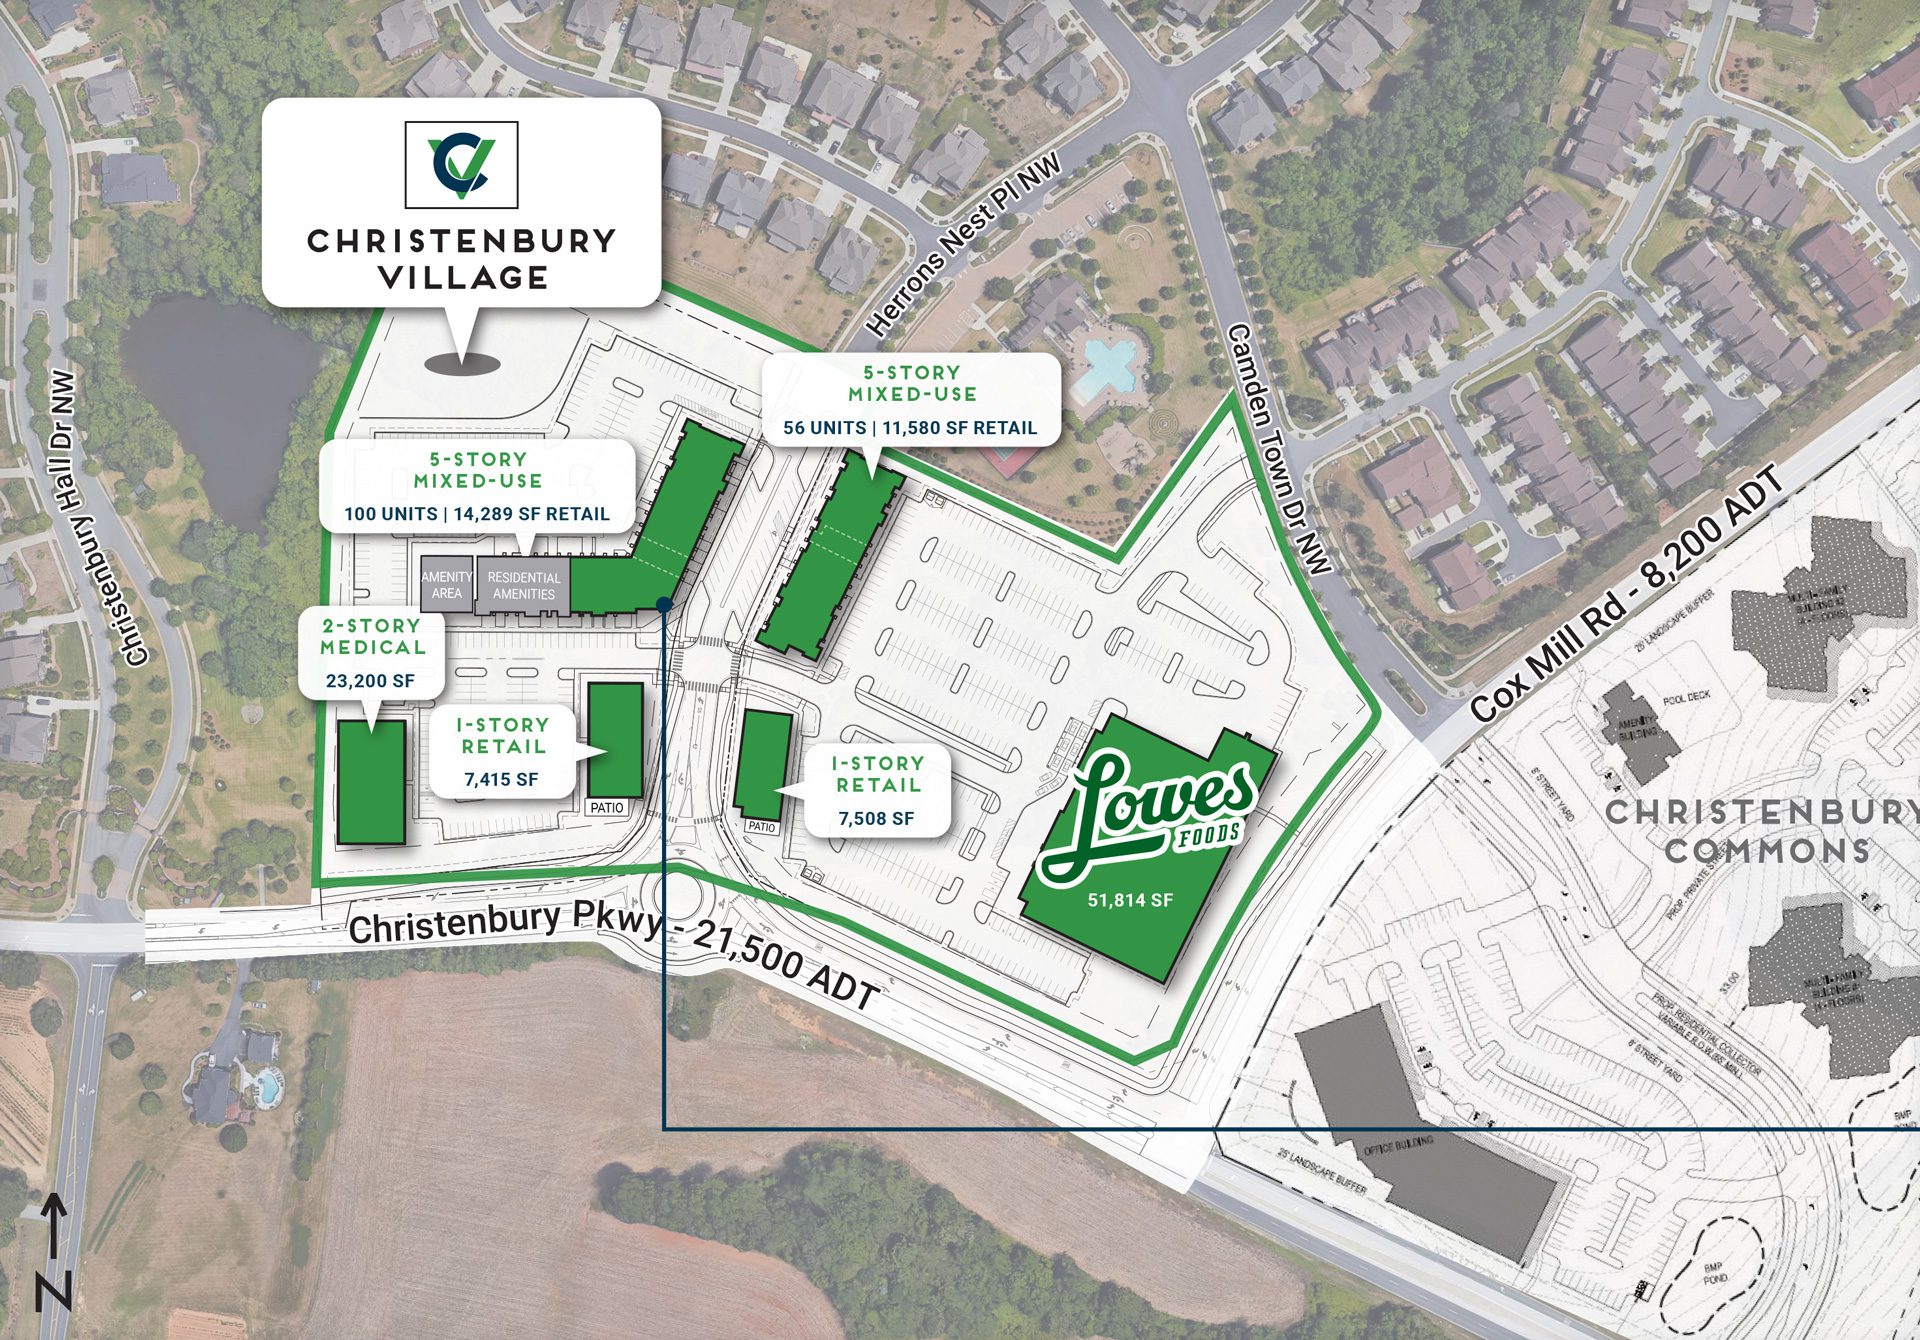 Christenbury-Village-site-plan-aerial-overlay